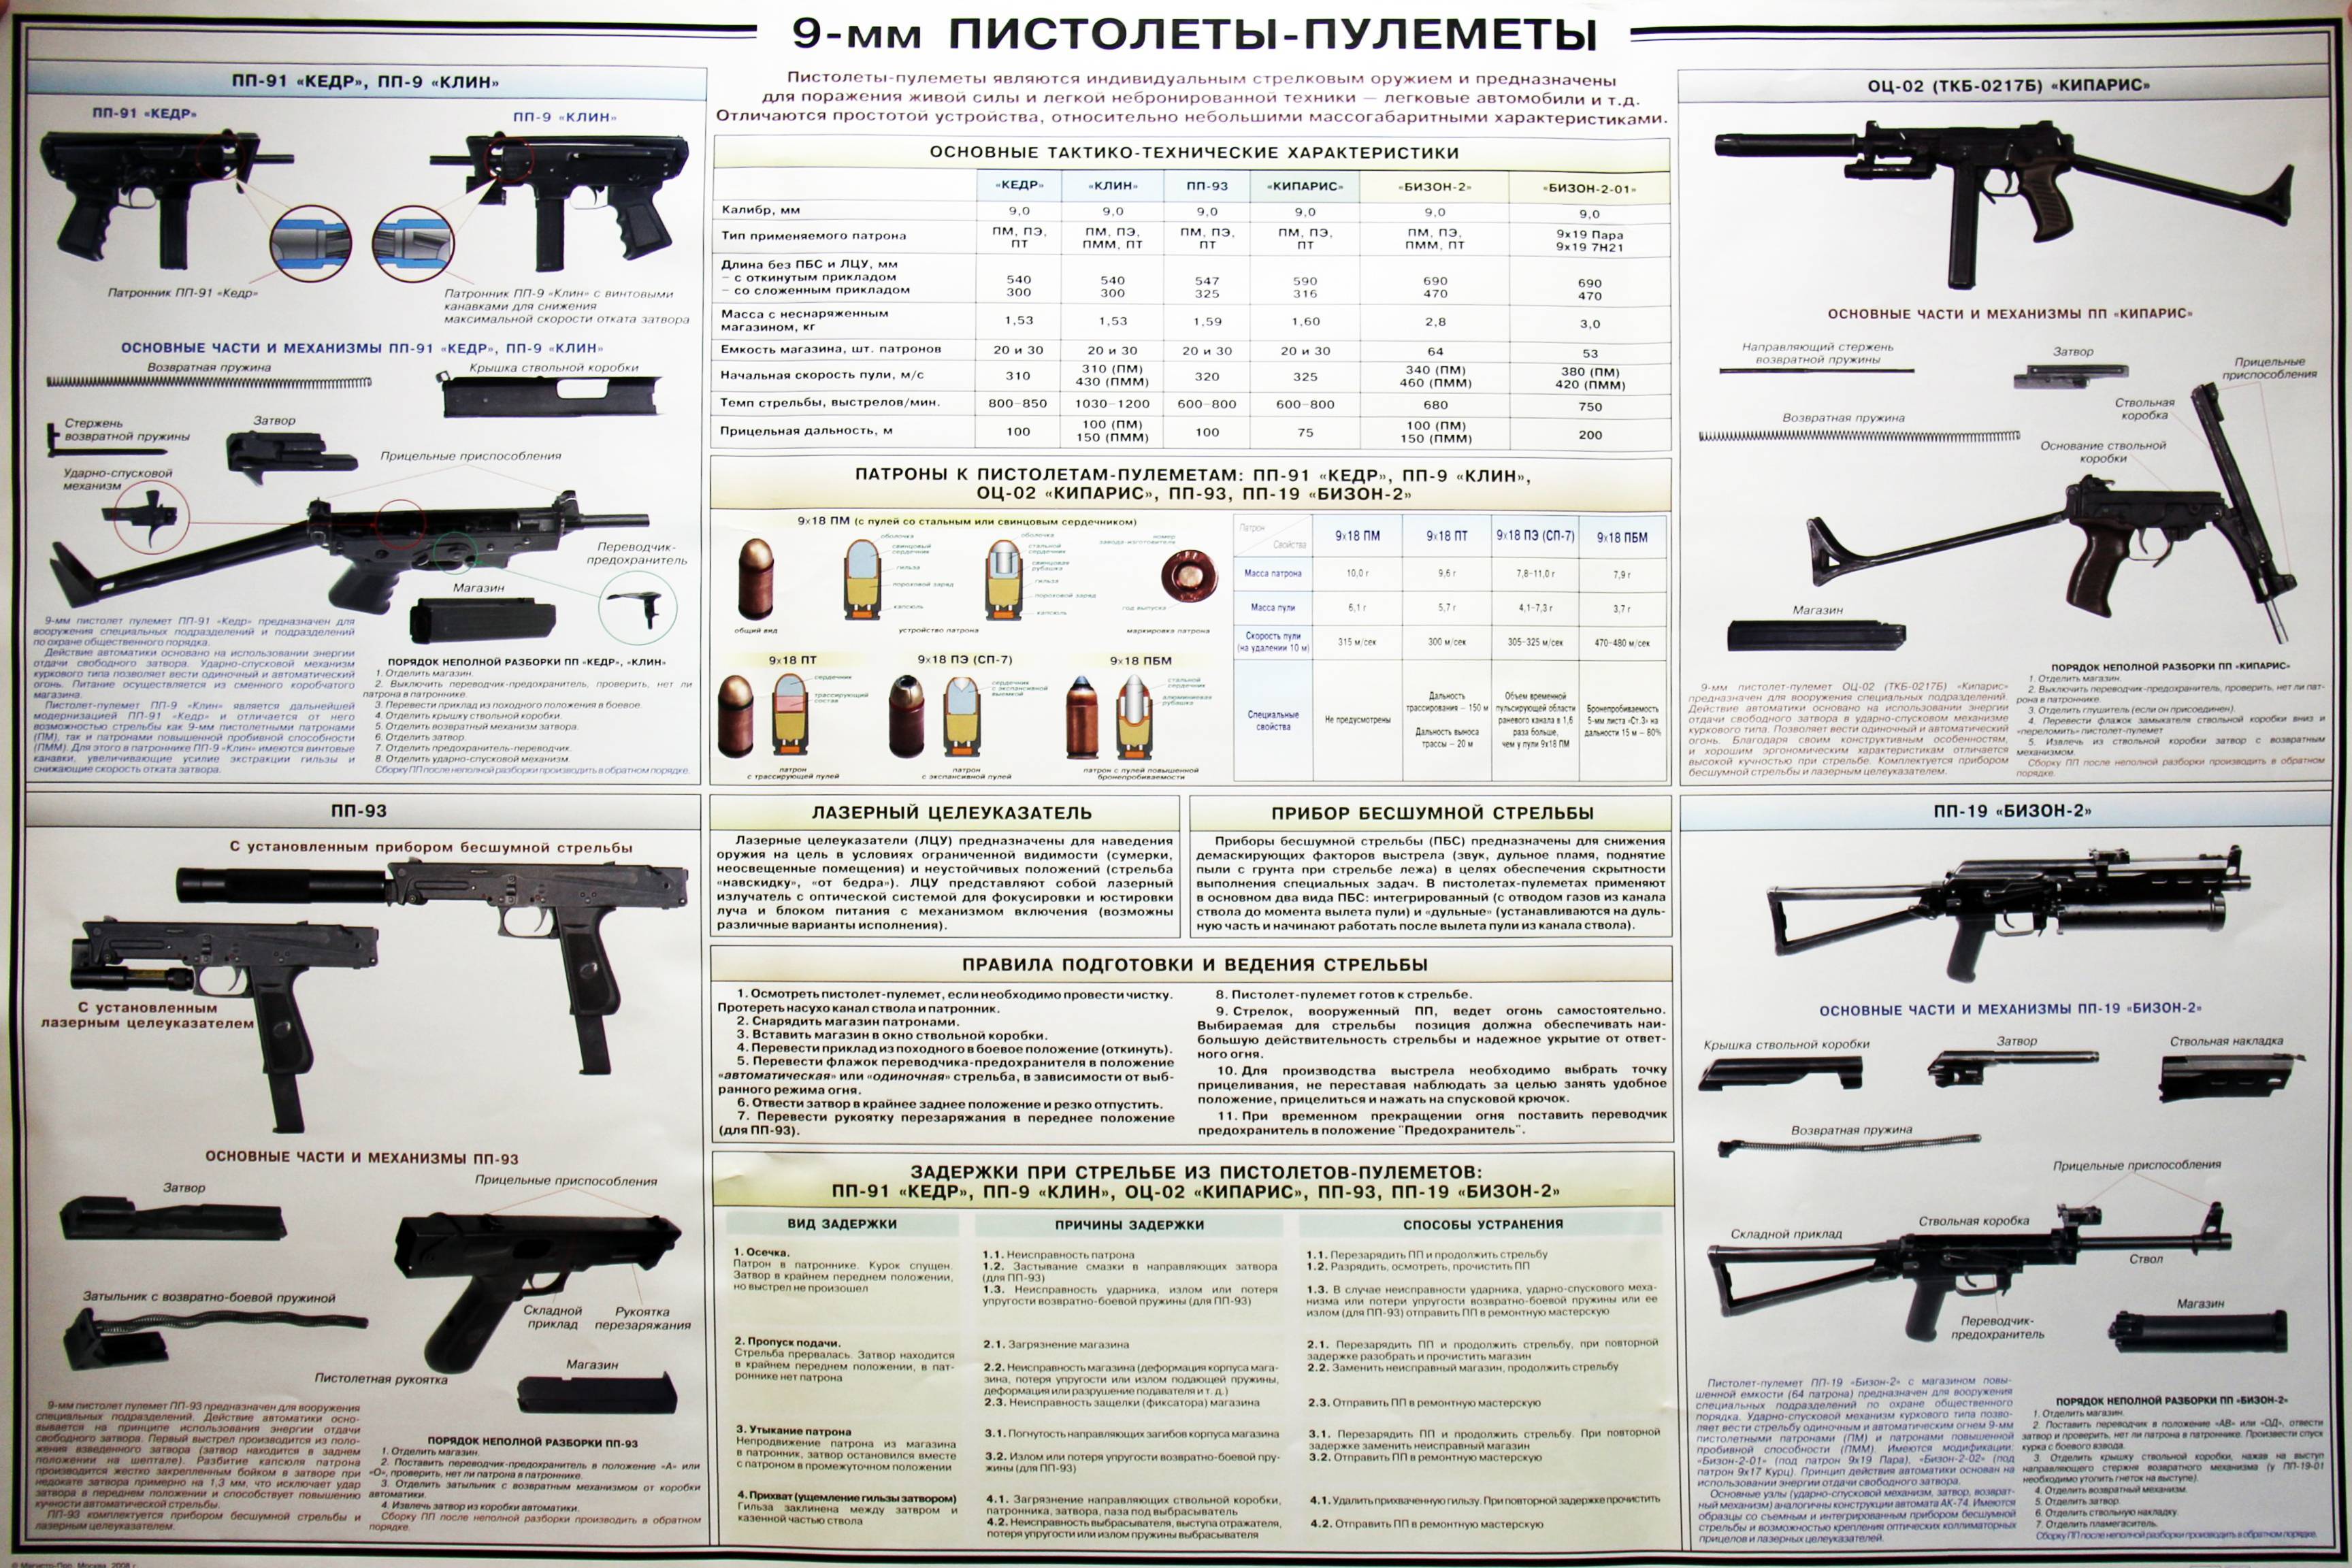 Пистолет-пулемет пп-93 ттх. фото. видео. размеры. скорострельность. скорость пули. прицельная дальность. вес